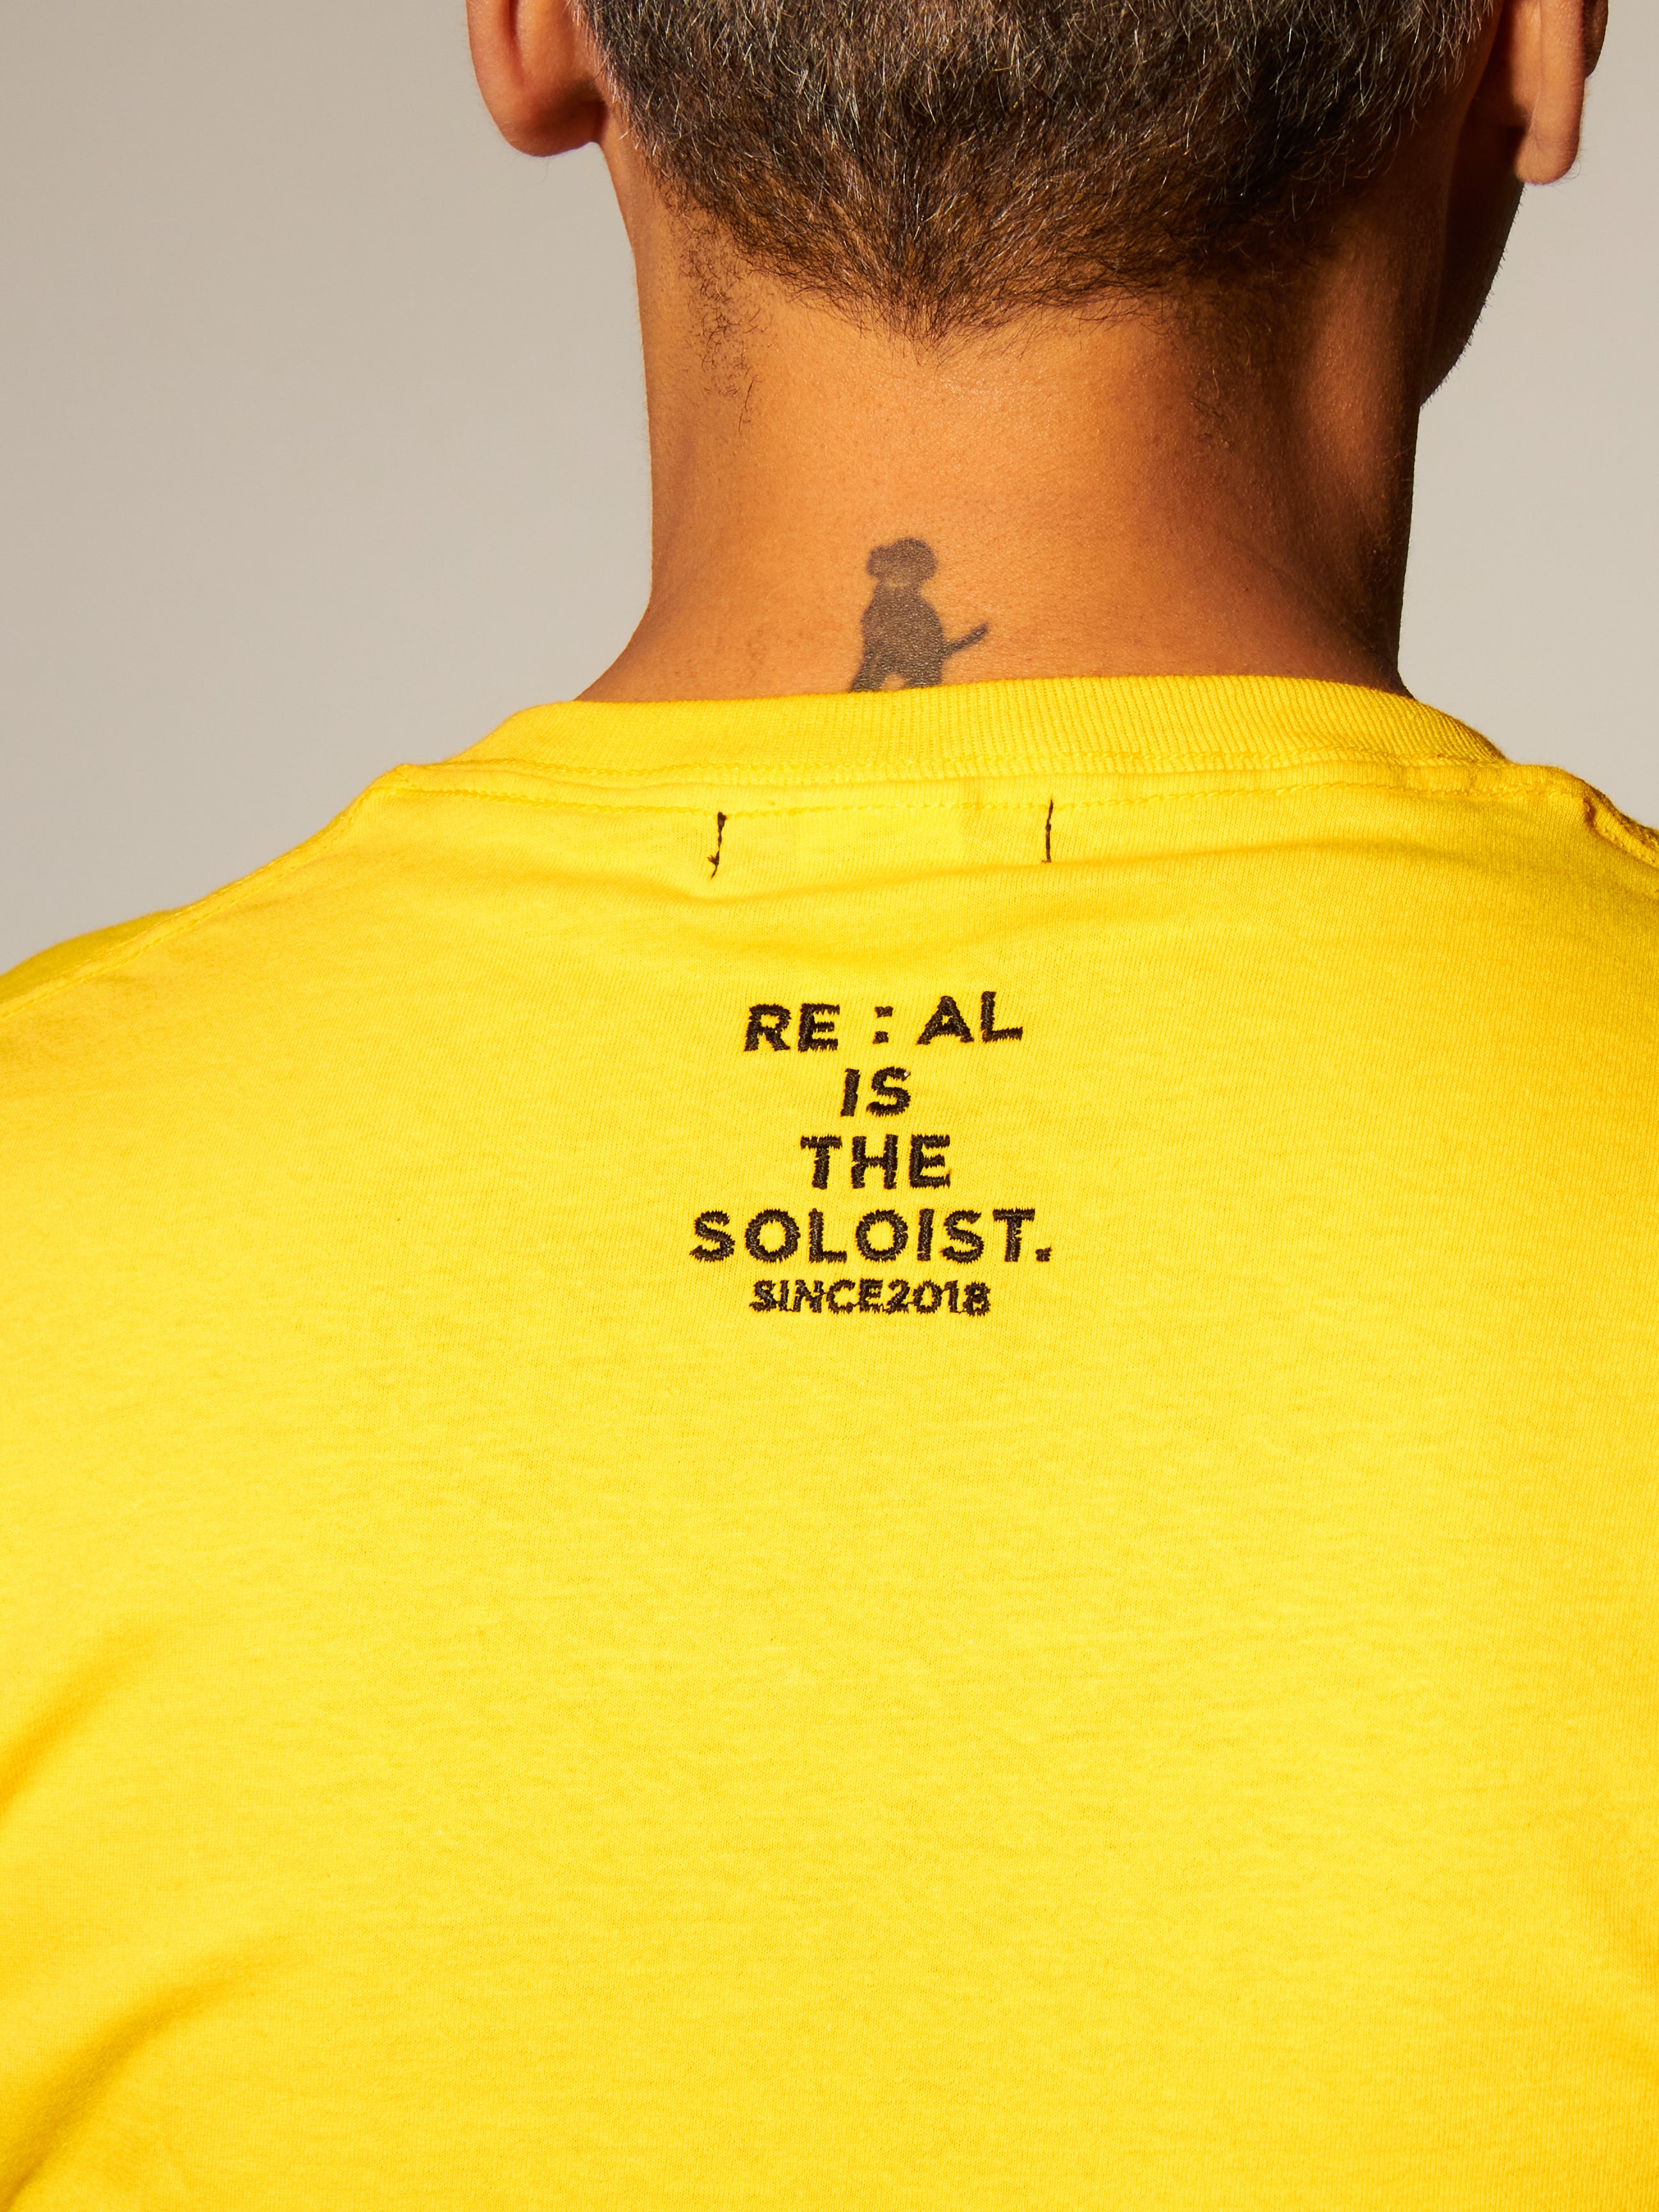 RE:AL IS THE SOLOIST "100% RE:AL" I'M A SOUVENIR Tシャツ